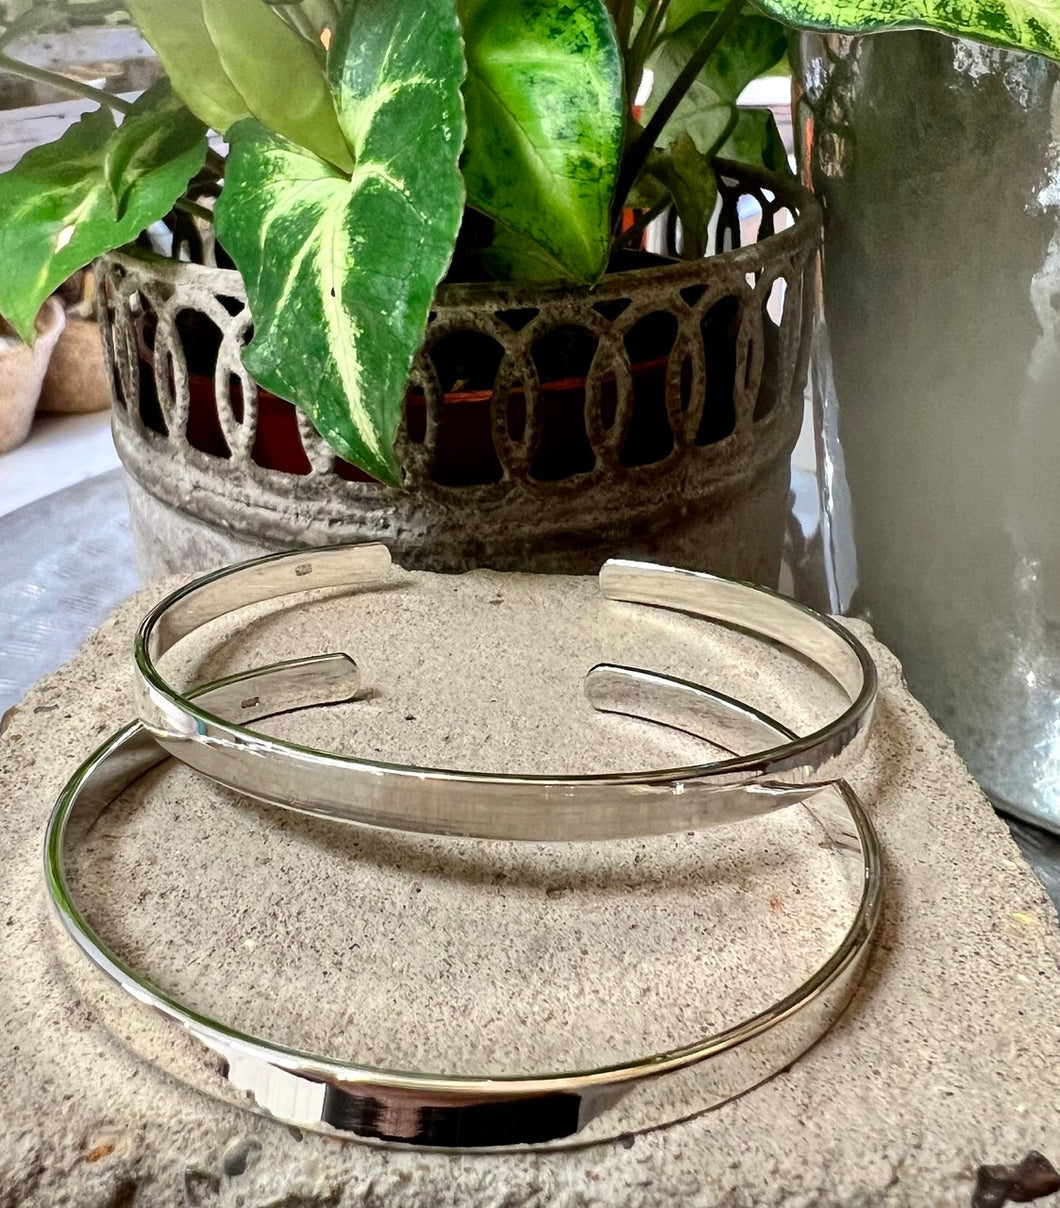 sterling silver cuff bracelets in 2 sizes